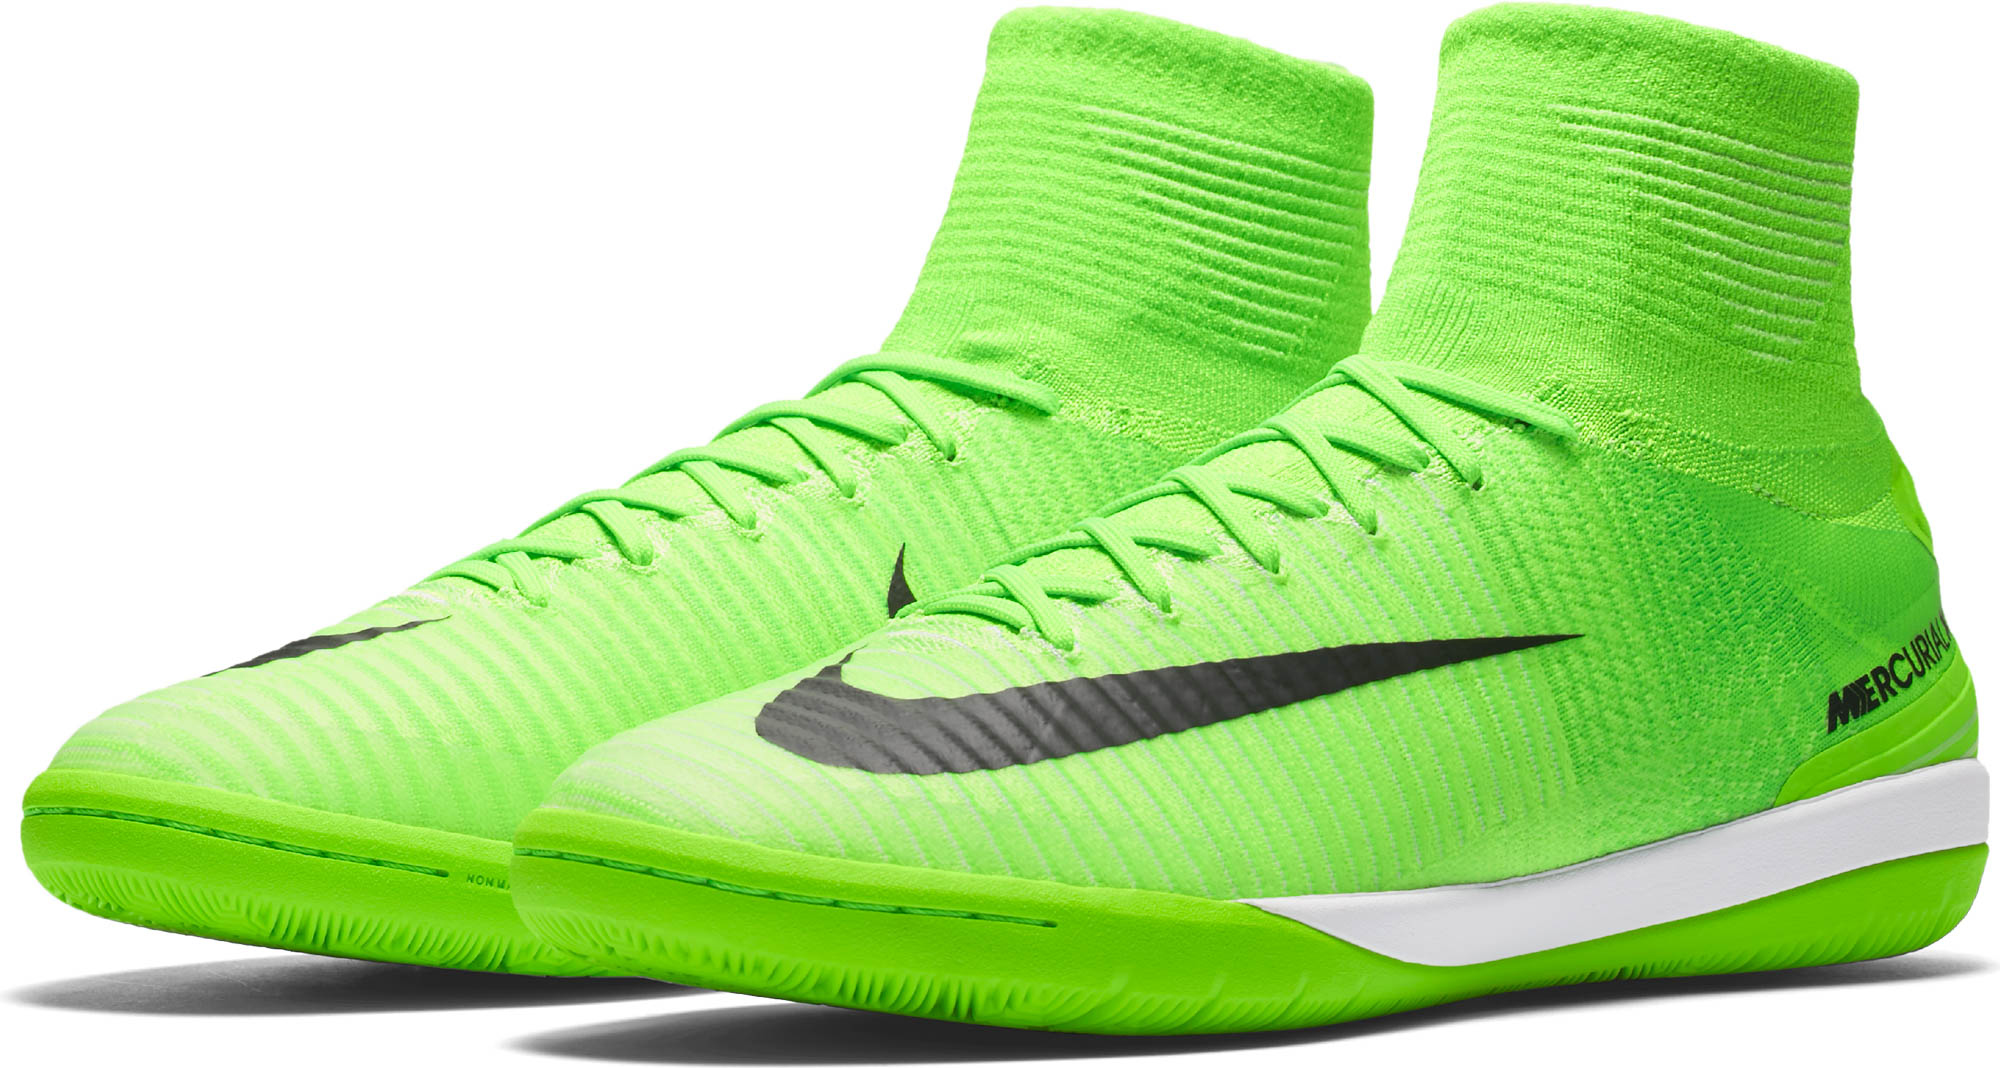 Nike MercurialX Proximo II IC - Green Proximo IIs